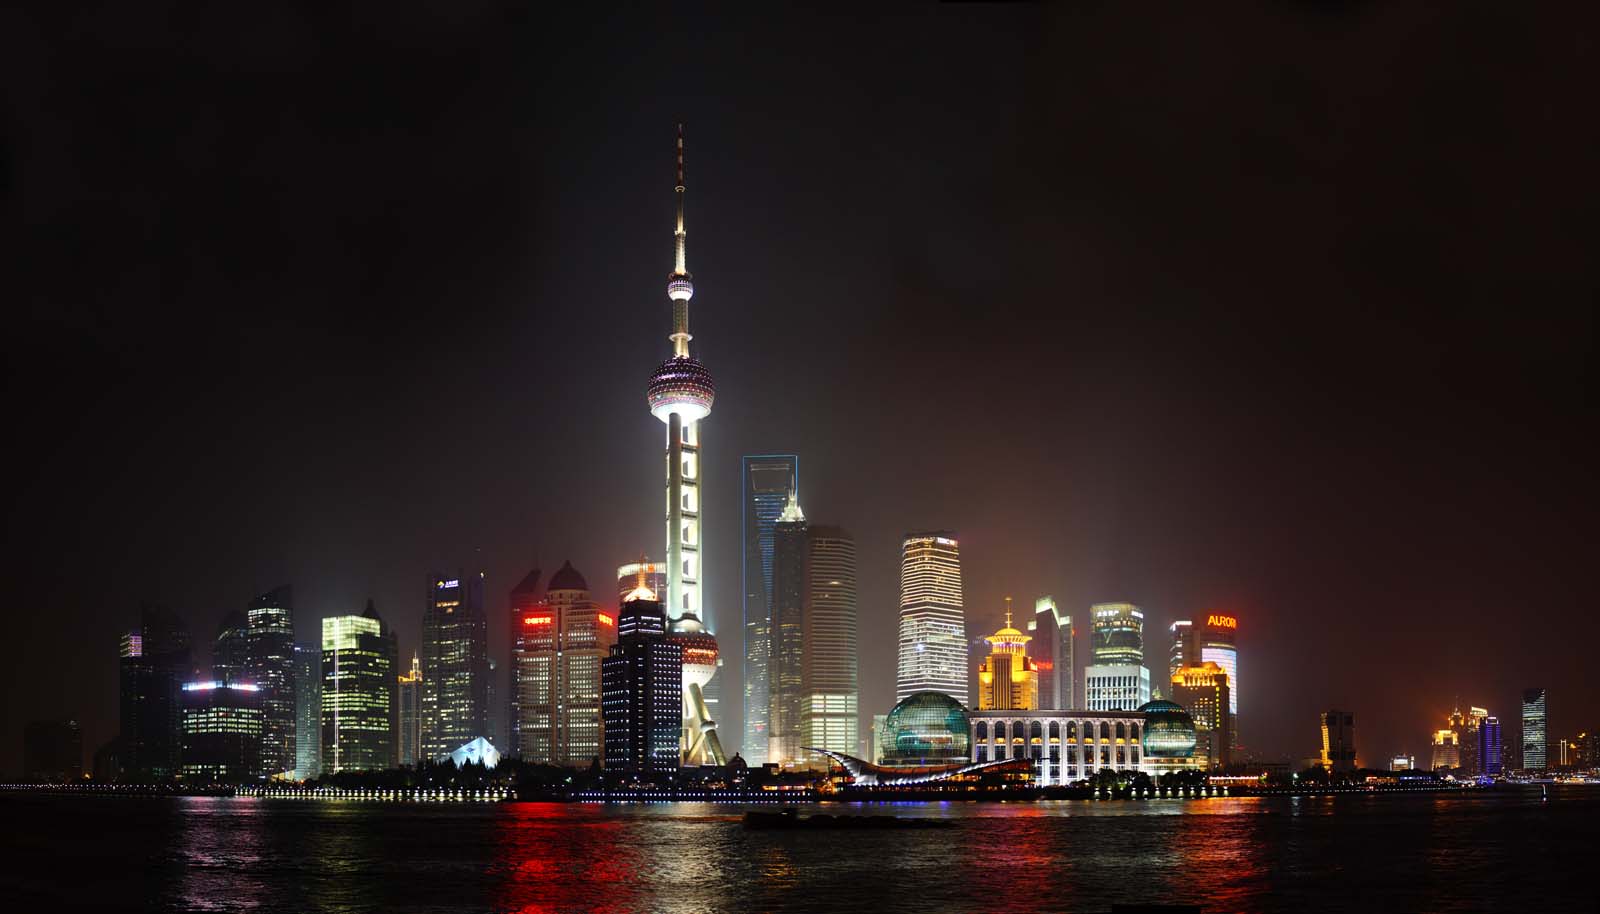 ゆんフリー写真素材集 No 上海の夜景 中国 上海